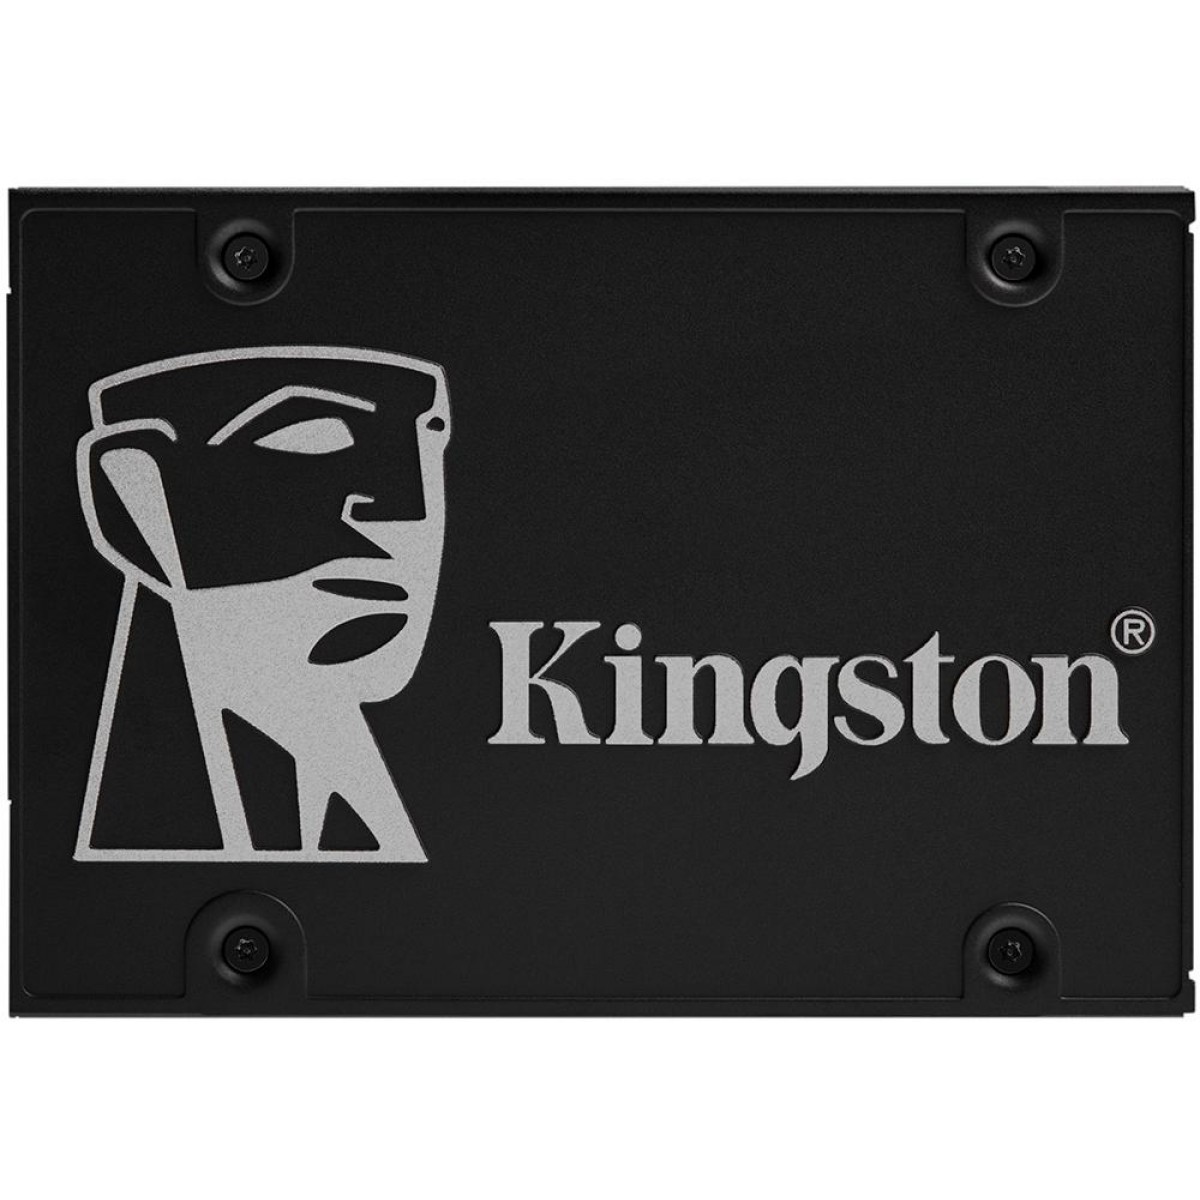 SSD Kingston KC600, 256GB, Sata, Leitura 550MB/s e Gravação 500MB/s, SKC600/256G